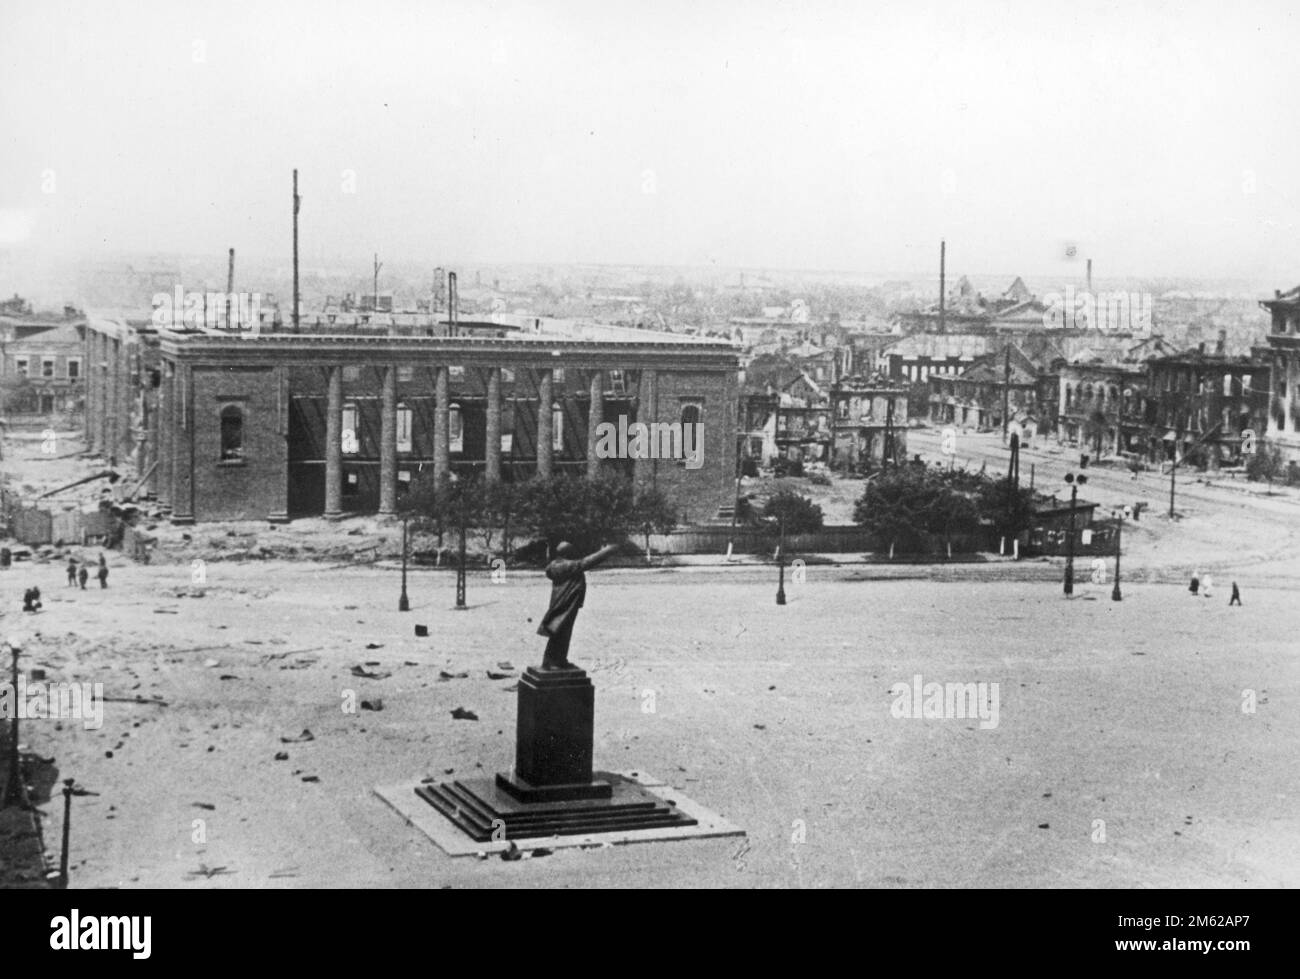 Una parte de la ciudad destruida de Voronezh en Rusia durante la Operación Barbarroja, la invasión nazi de la Unión Soviética. Una plaza con un monumento a Vladimir Lenin es visible en primer plano. Foto de stock